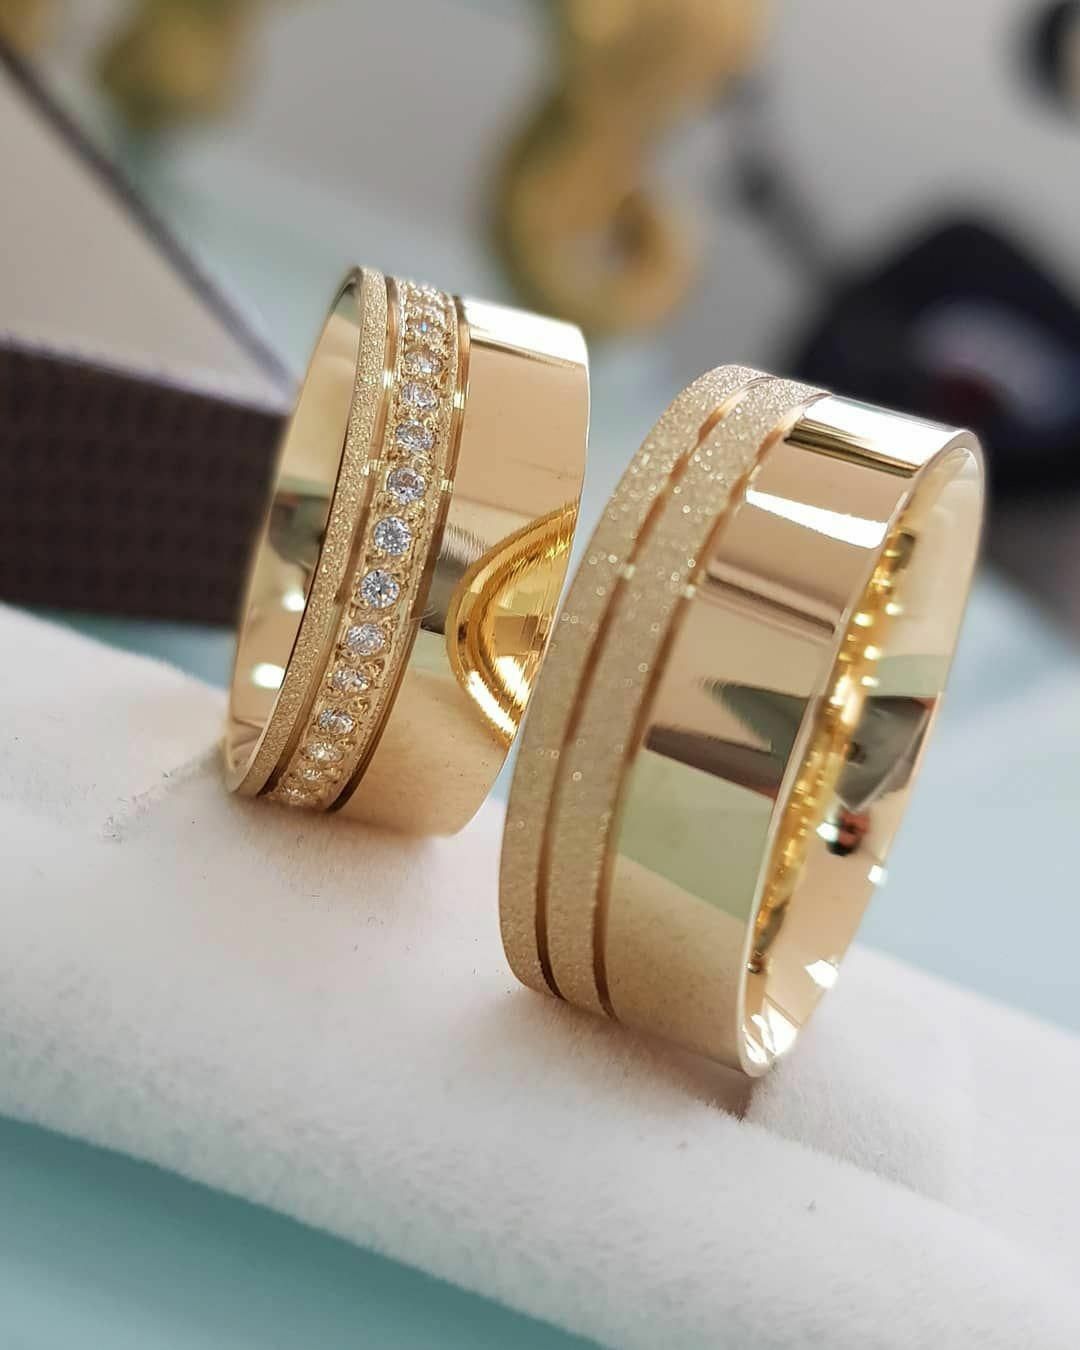 Красивые золотые обручальные кольца